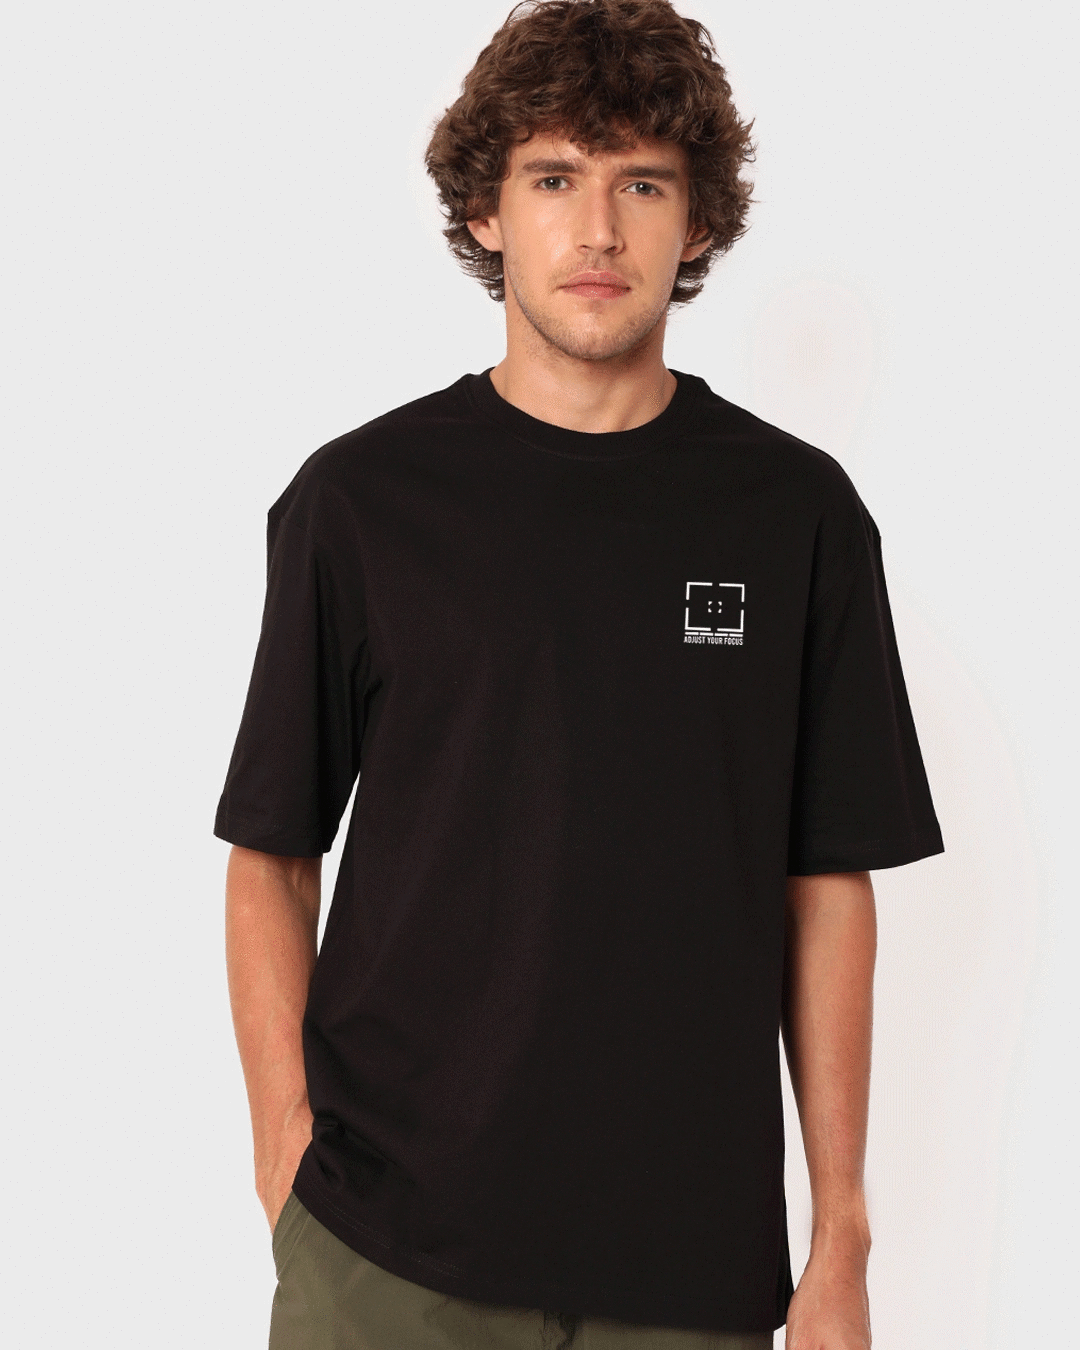 Buy Men's Black Adjust Your Focus Oversized T-shirt Online at Bewakoof